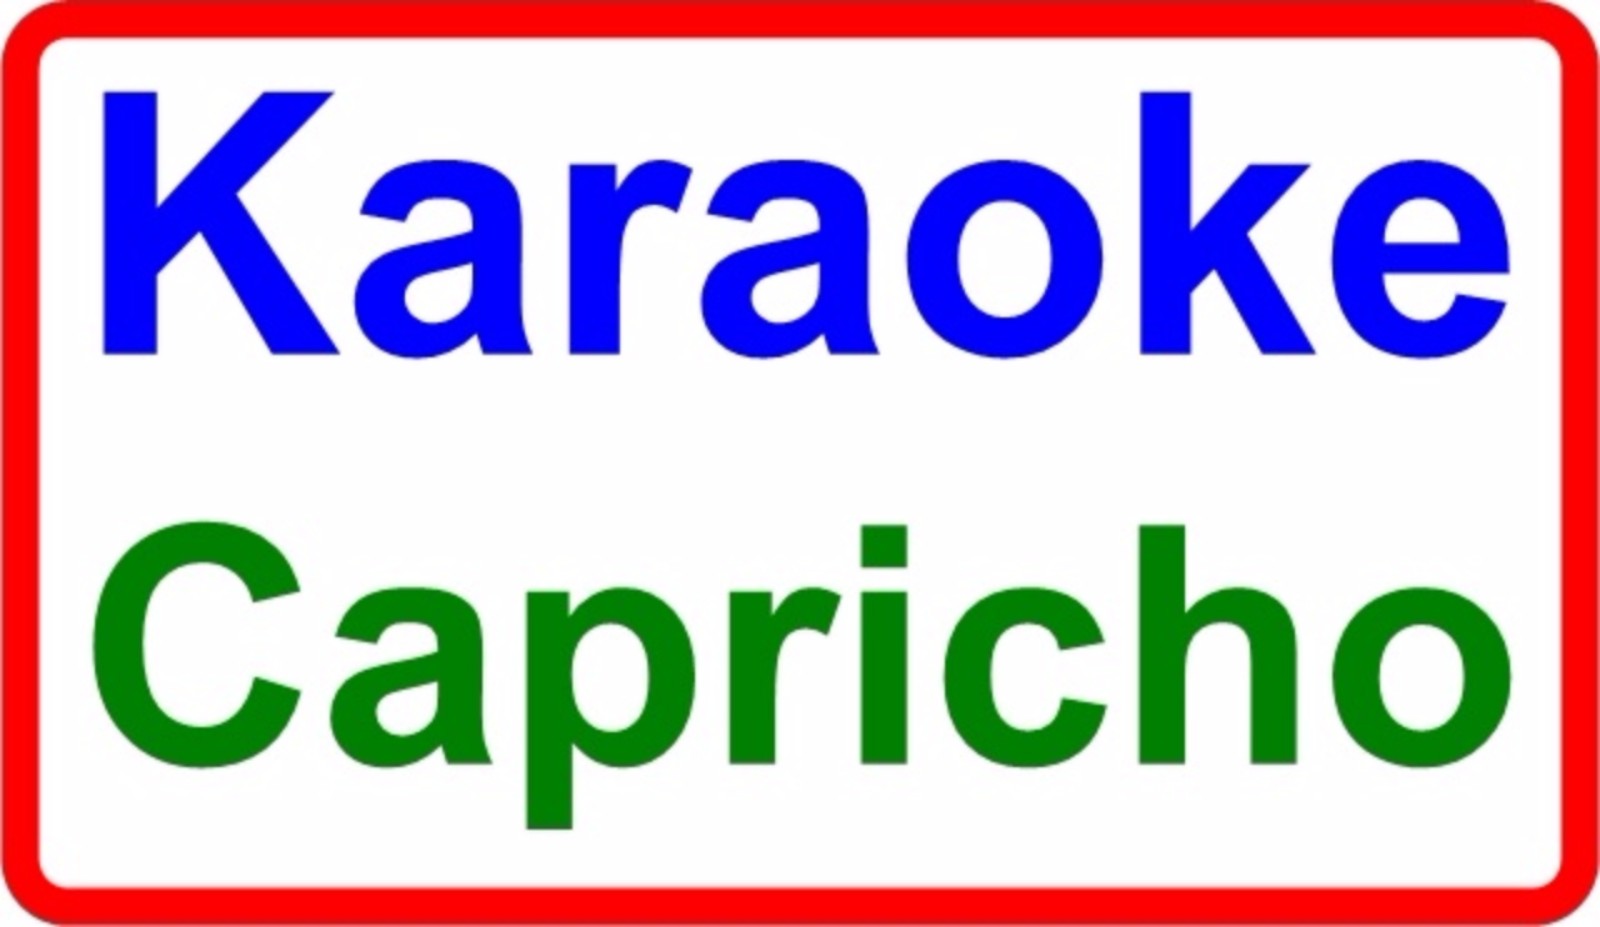 Karaoke Capricho